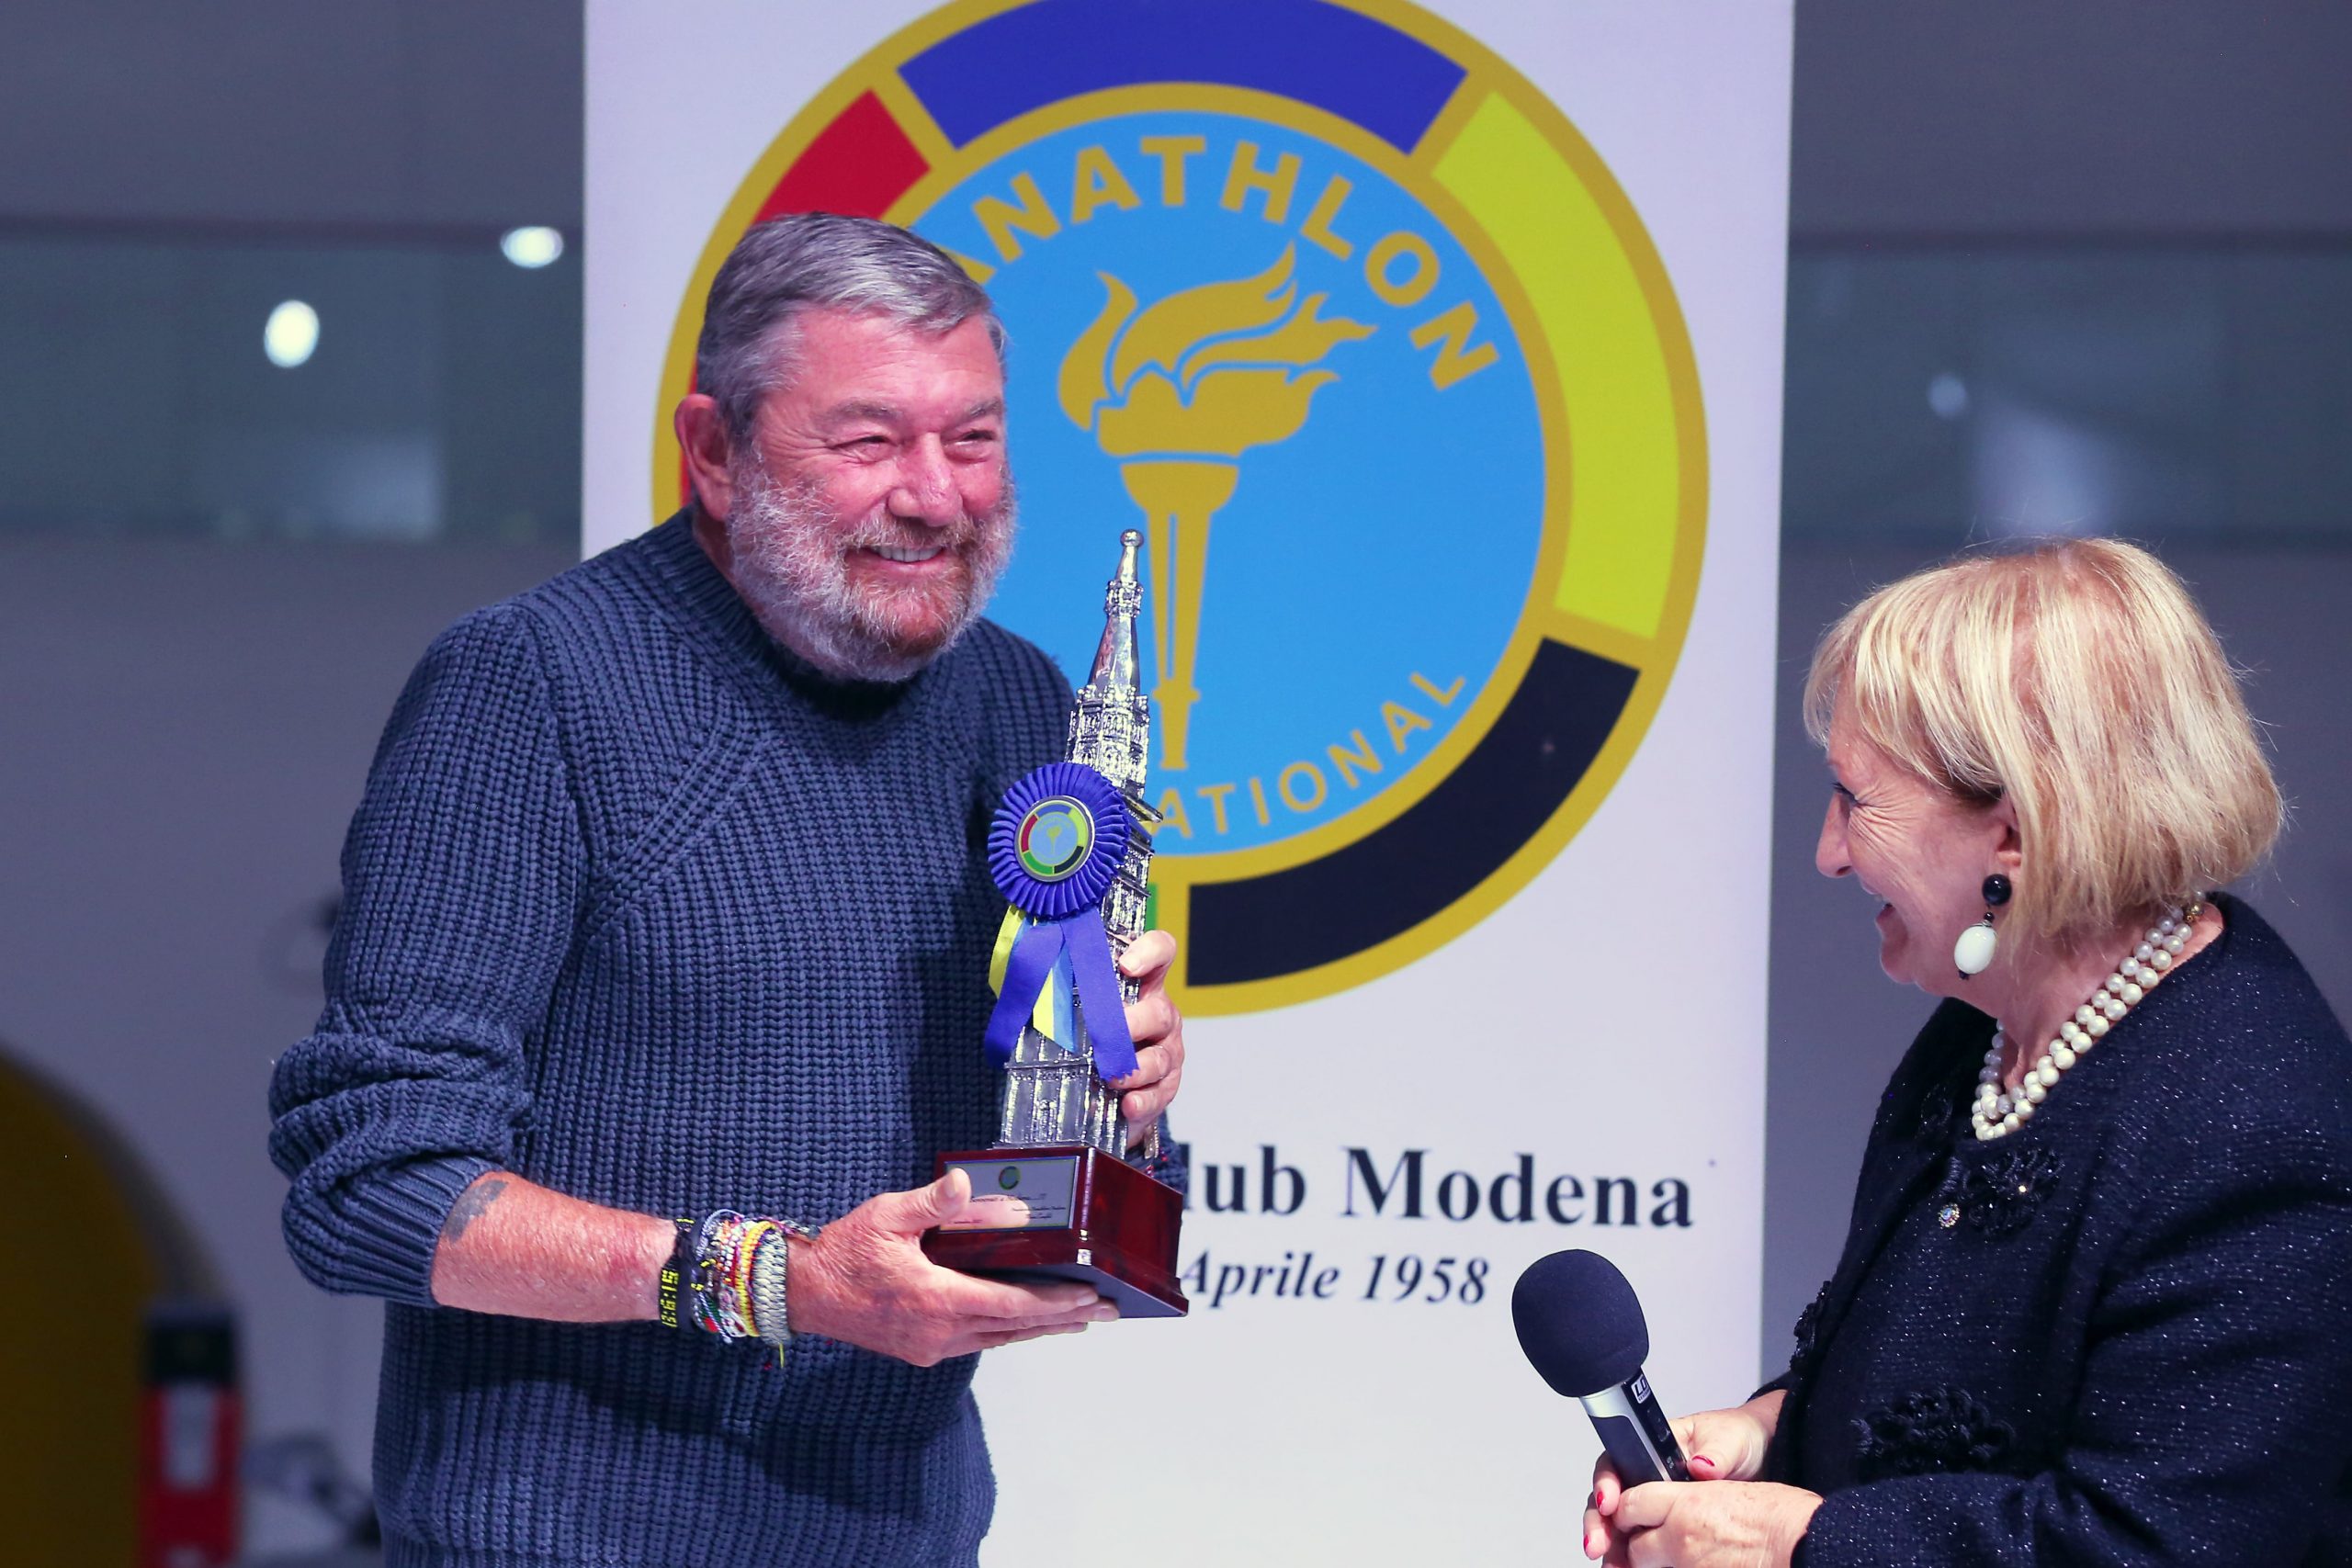 Carlo Rivetti Acquires Modena Football Club